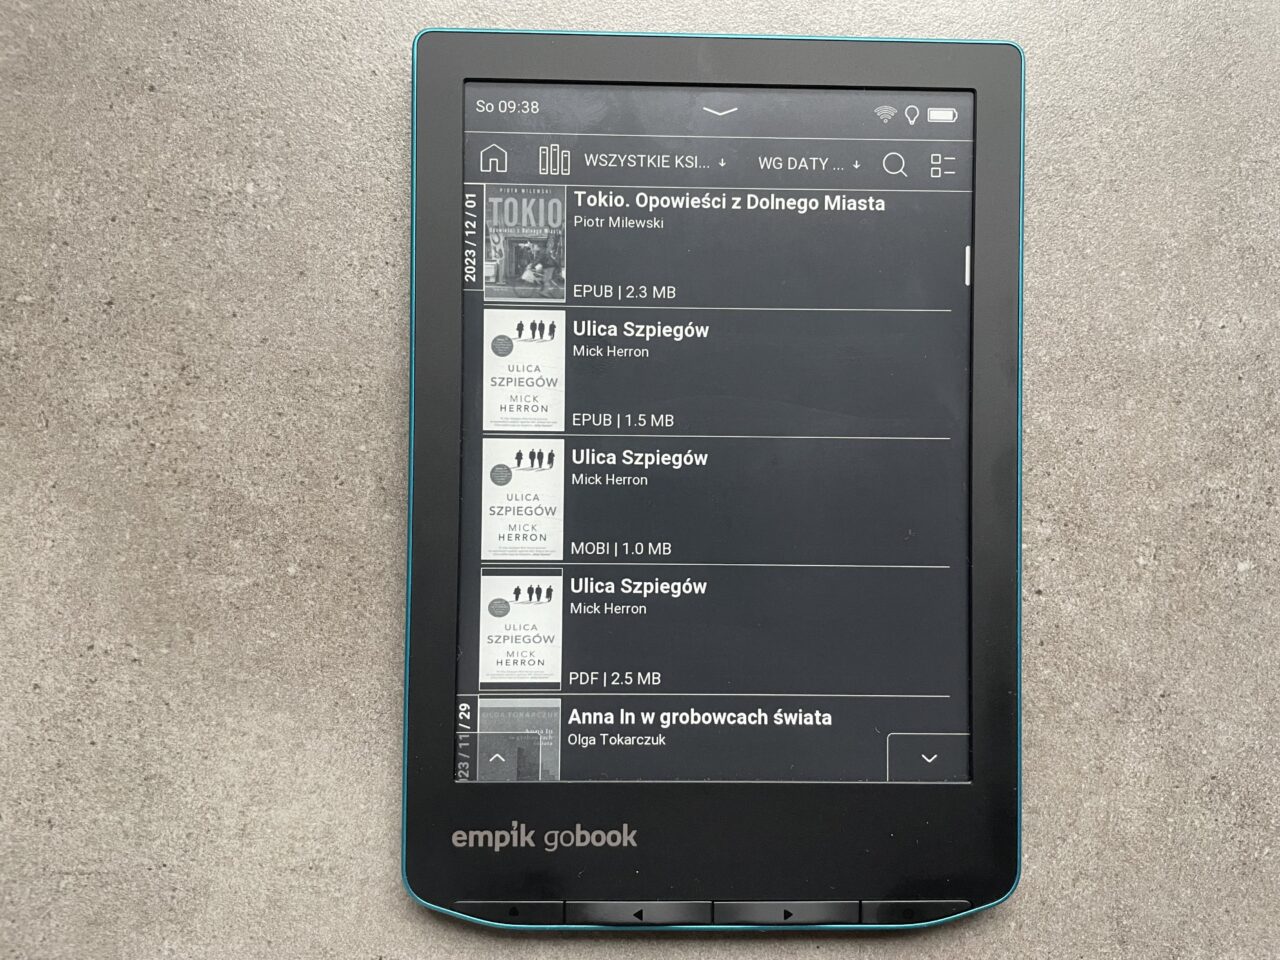 Czytnik e-booków leżący na szarym tle z wyświetloną listą książek w bibliotece cyfrowej.